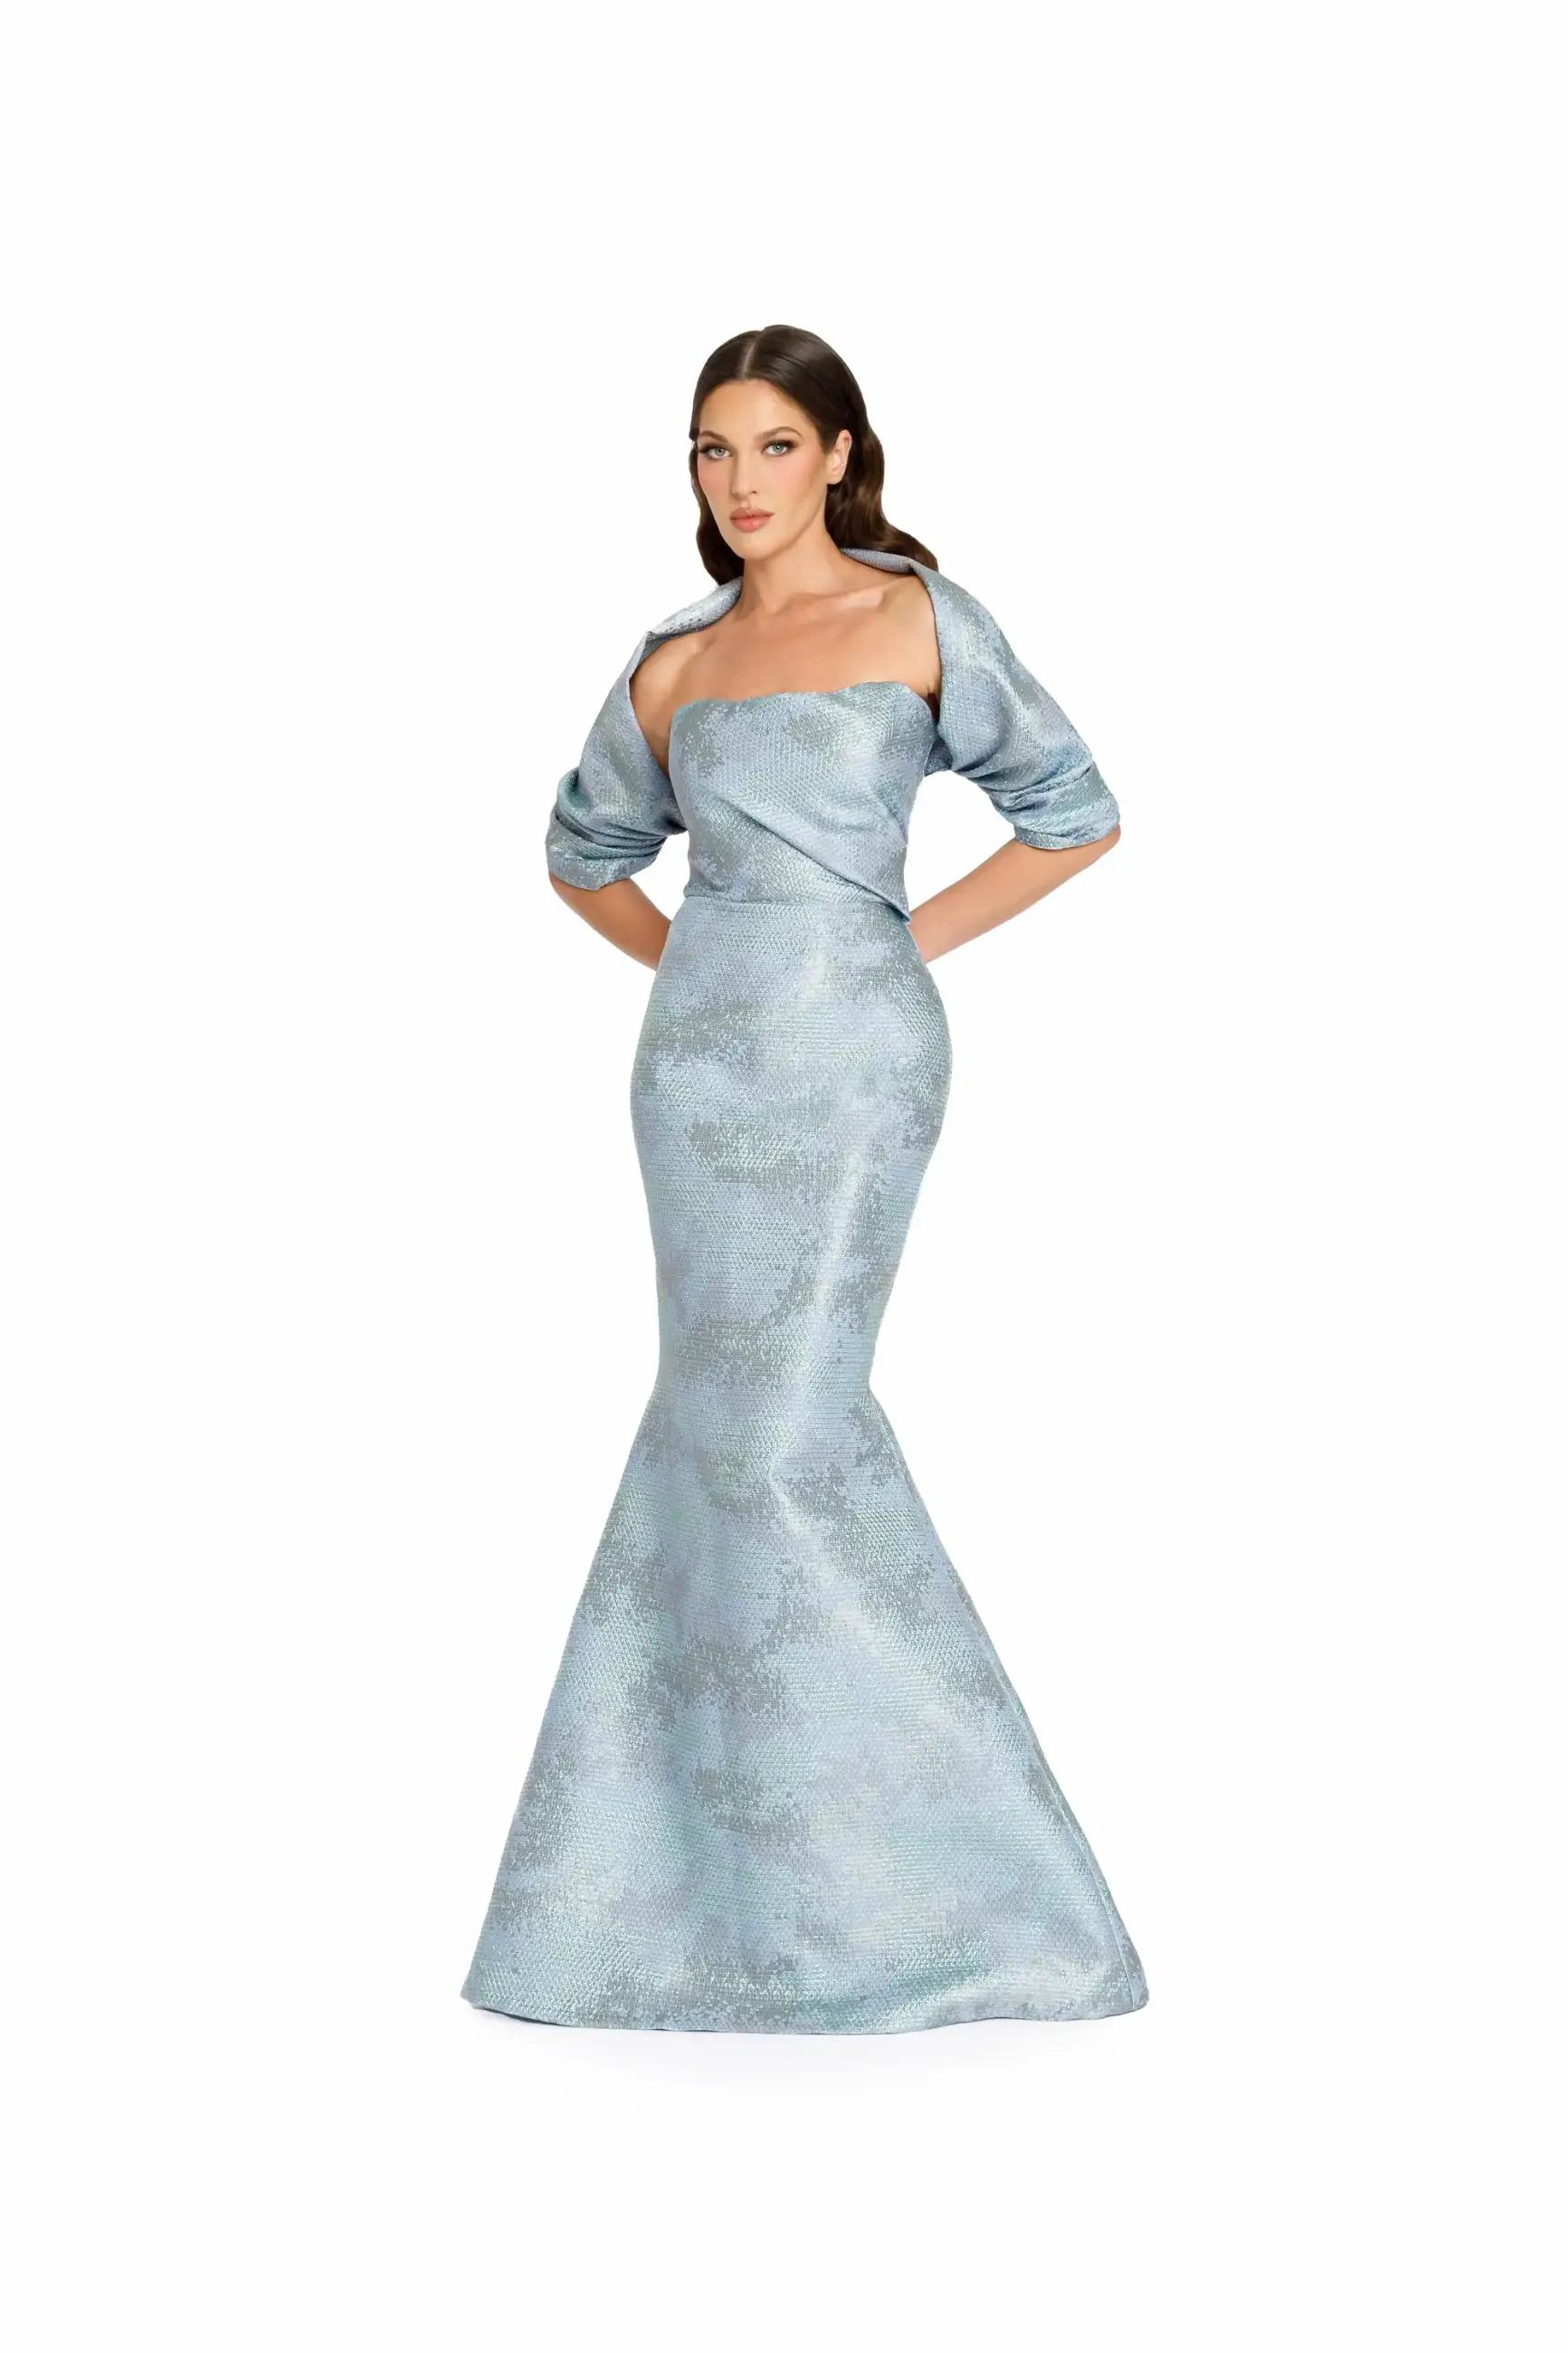 Model wearing a long light blue evening gown